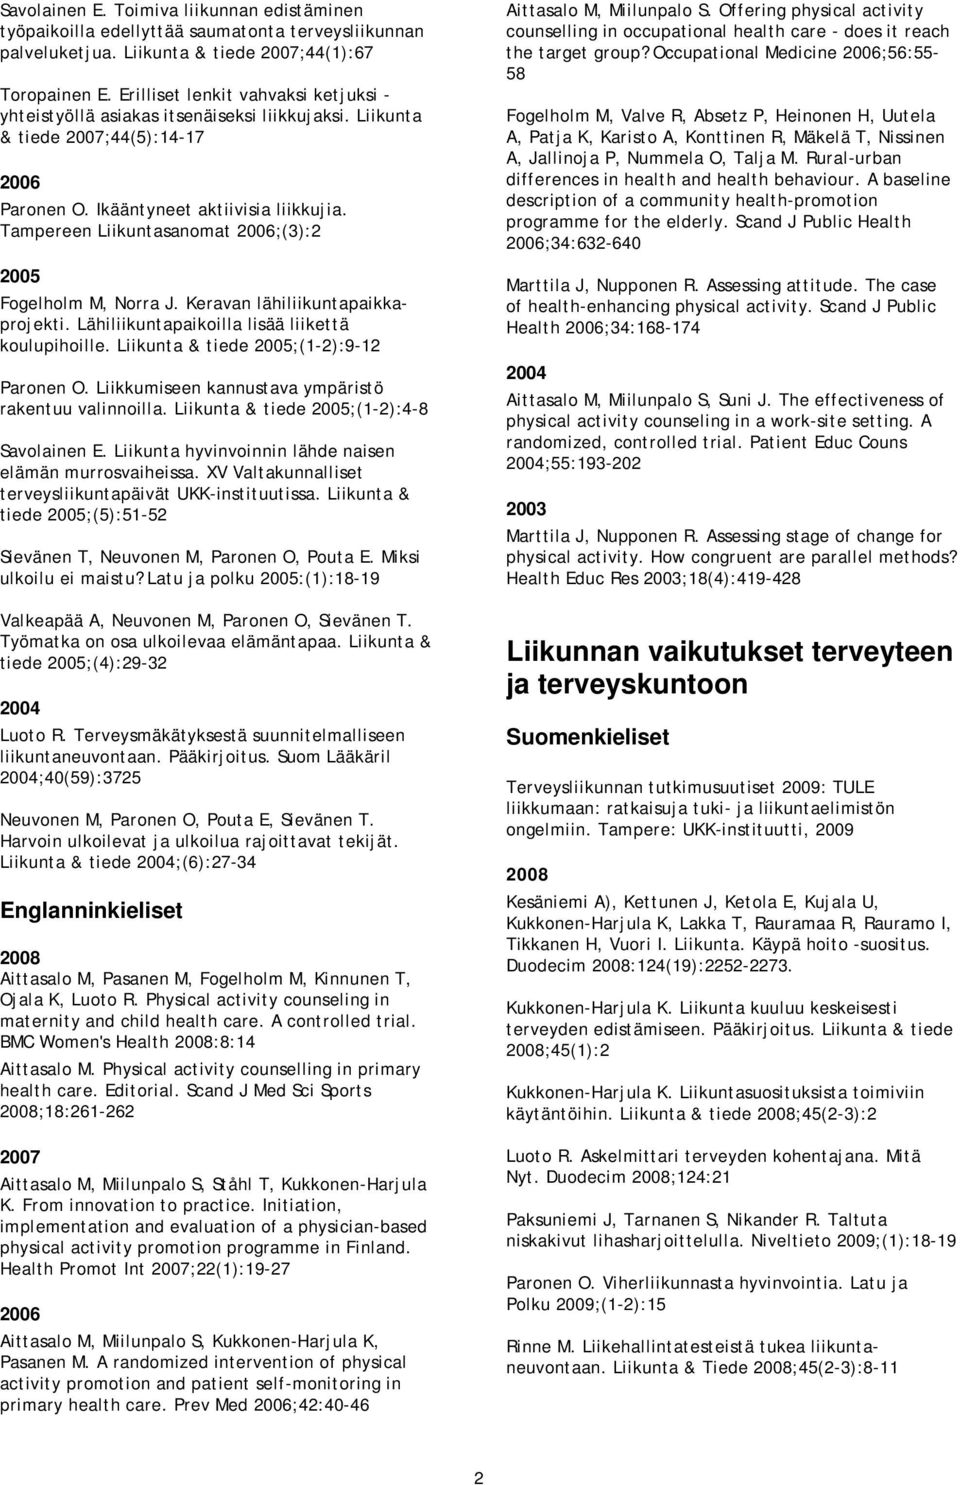 Tampereen Liikuntasanomat ;(3):2 Fogelholm M, Norra J. Keravan lähiliikuntapaikkaprojekti. Lähiliikuntapaikoilla lisää liikettä koulupihoille. Liikunta & tiede ;(1-2):9-12 Paronen O.